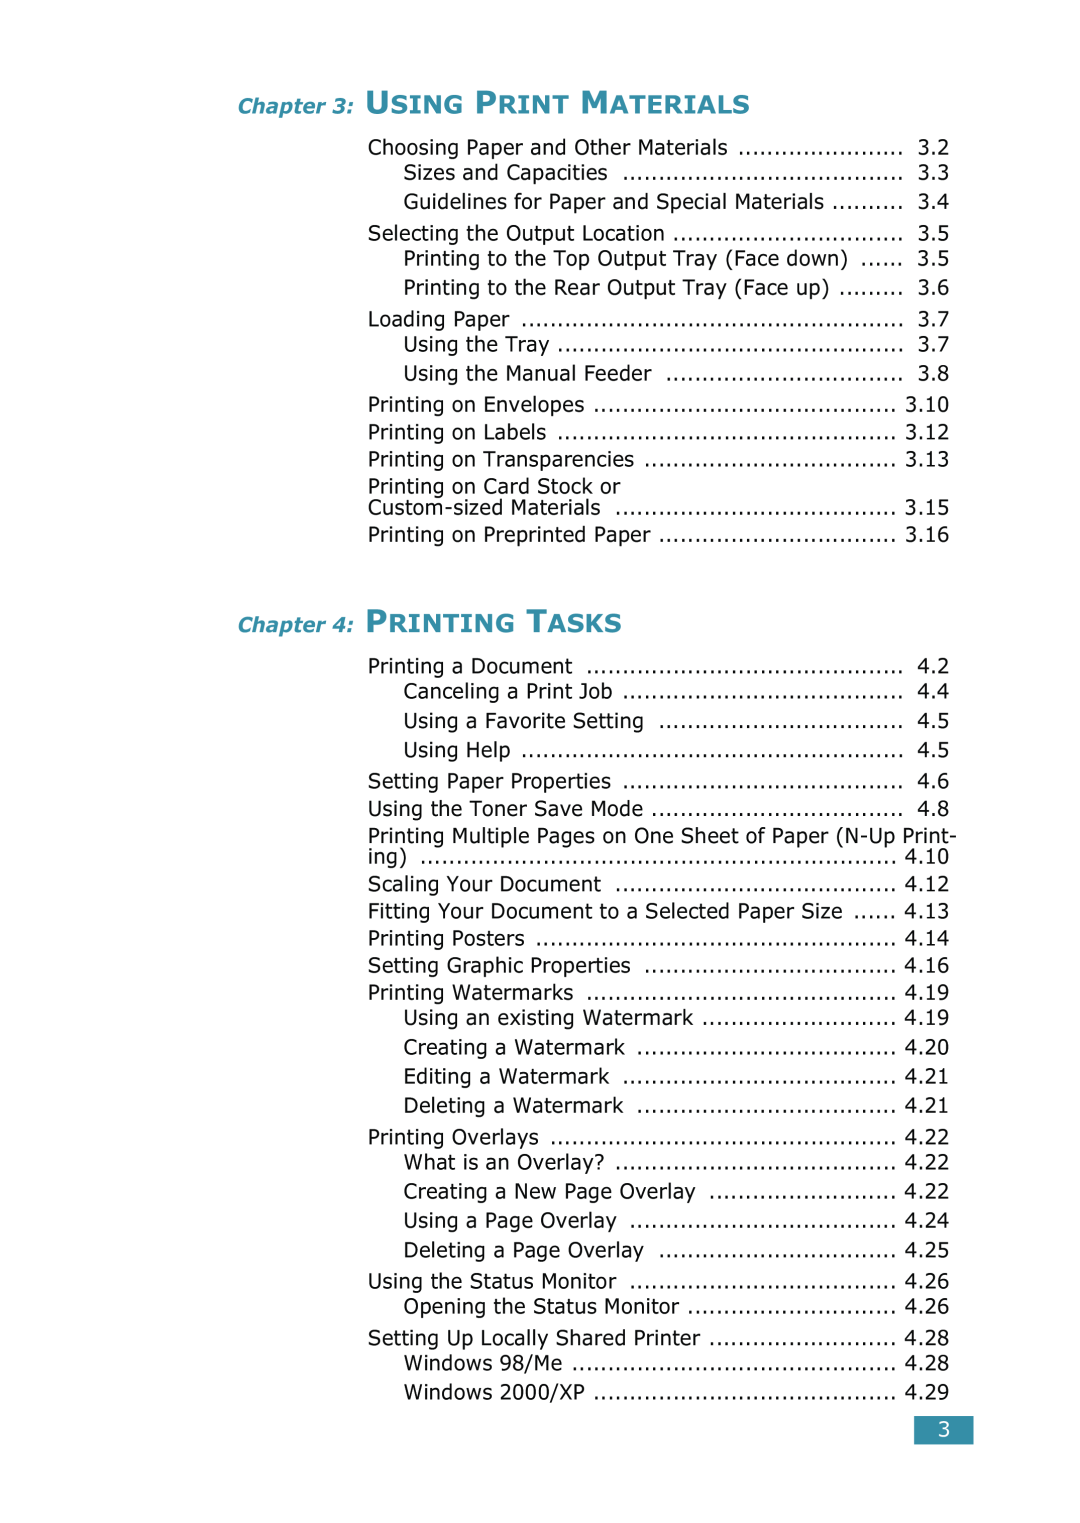 Samsung ML-1520 manual Using Print Materials, Printing Tasks 